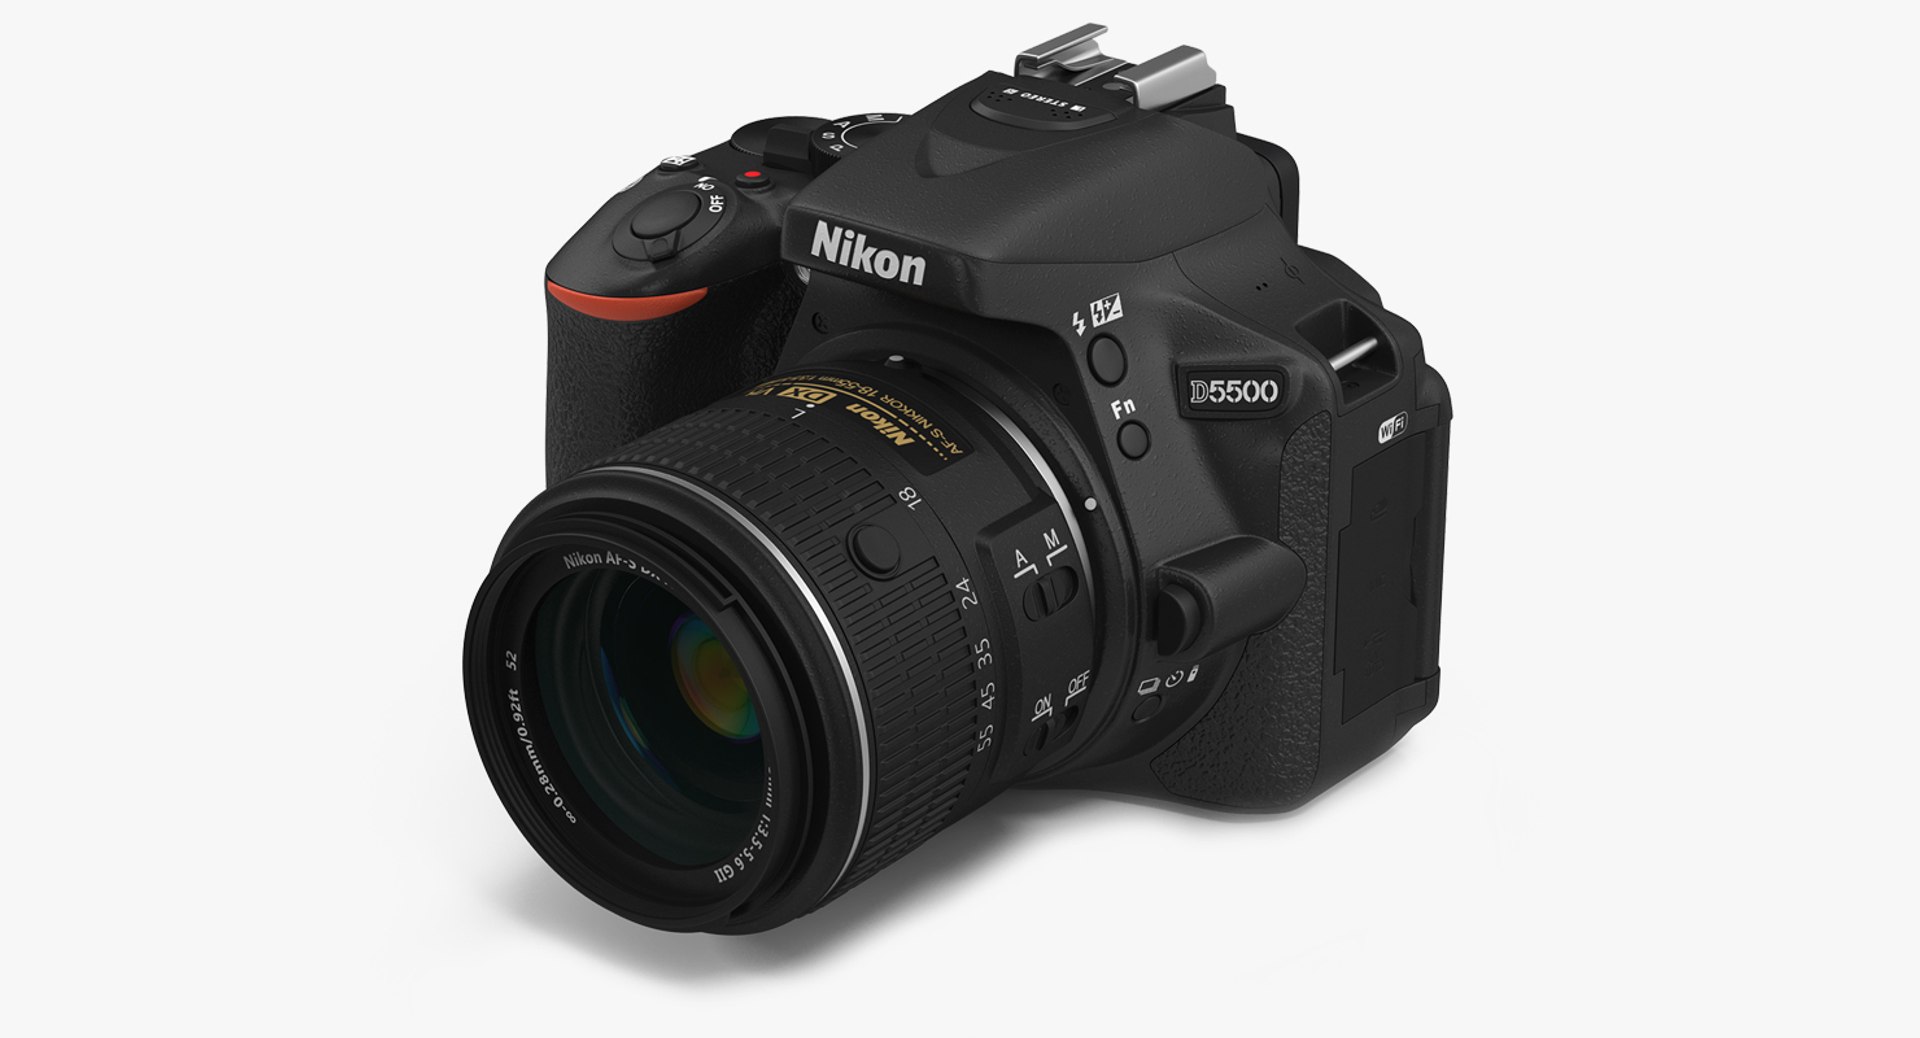 3d 3ds digital camera nikon d5500